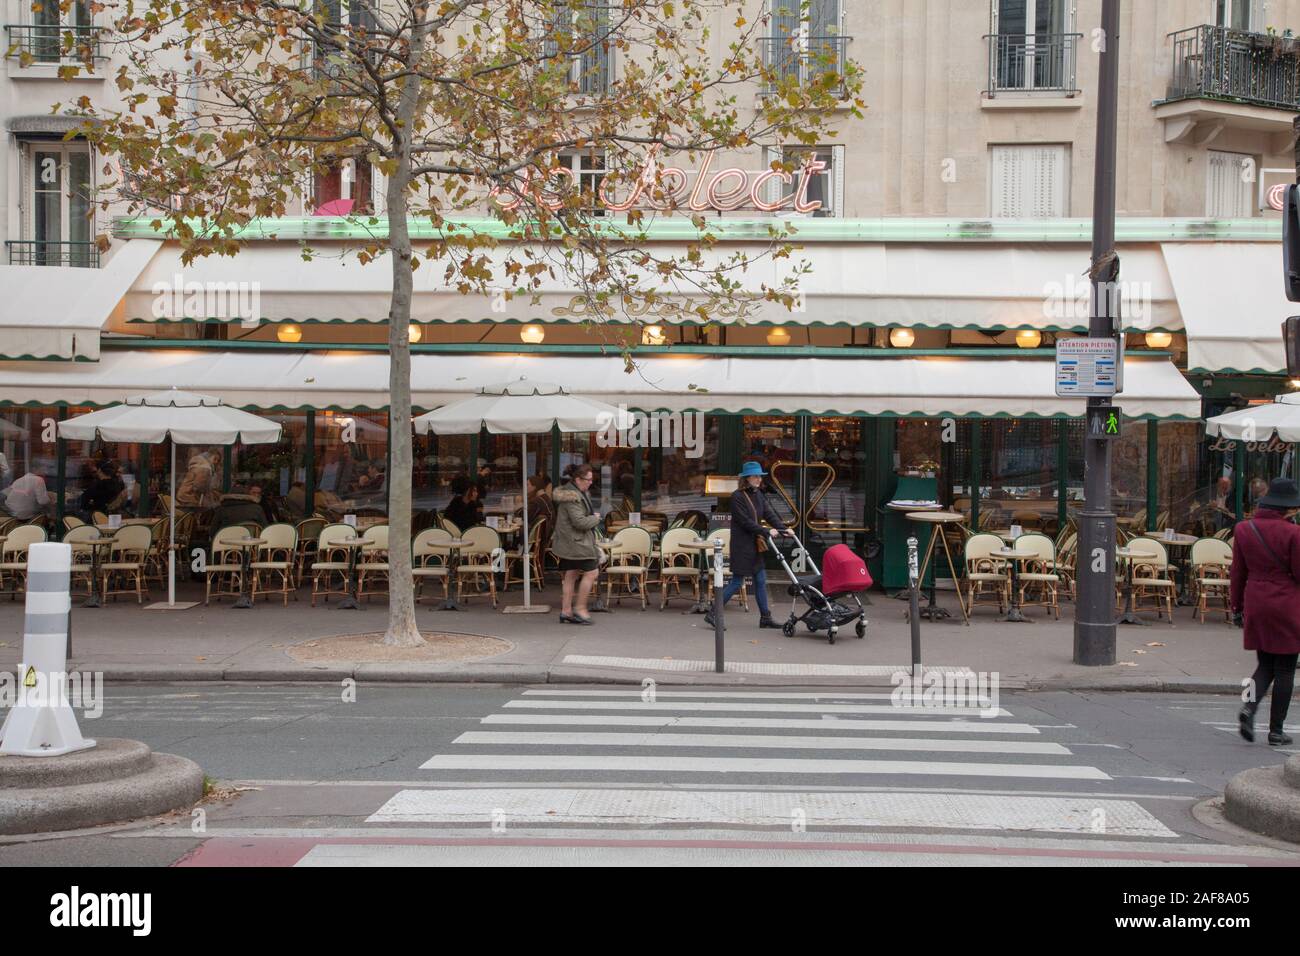 Le Select est une brasserie parisienne fondée en 1923 comme l'un des célèbres cafés des artistes et intellectuels dont Picasso et Hemingway Banque D'Images